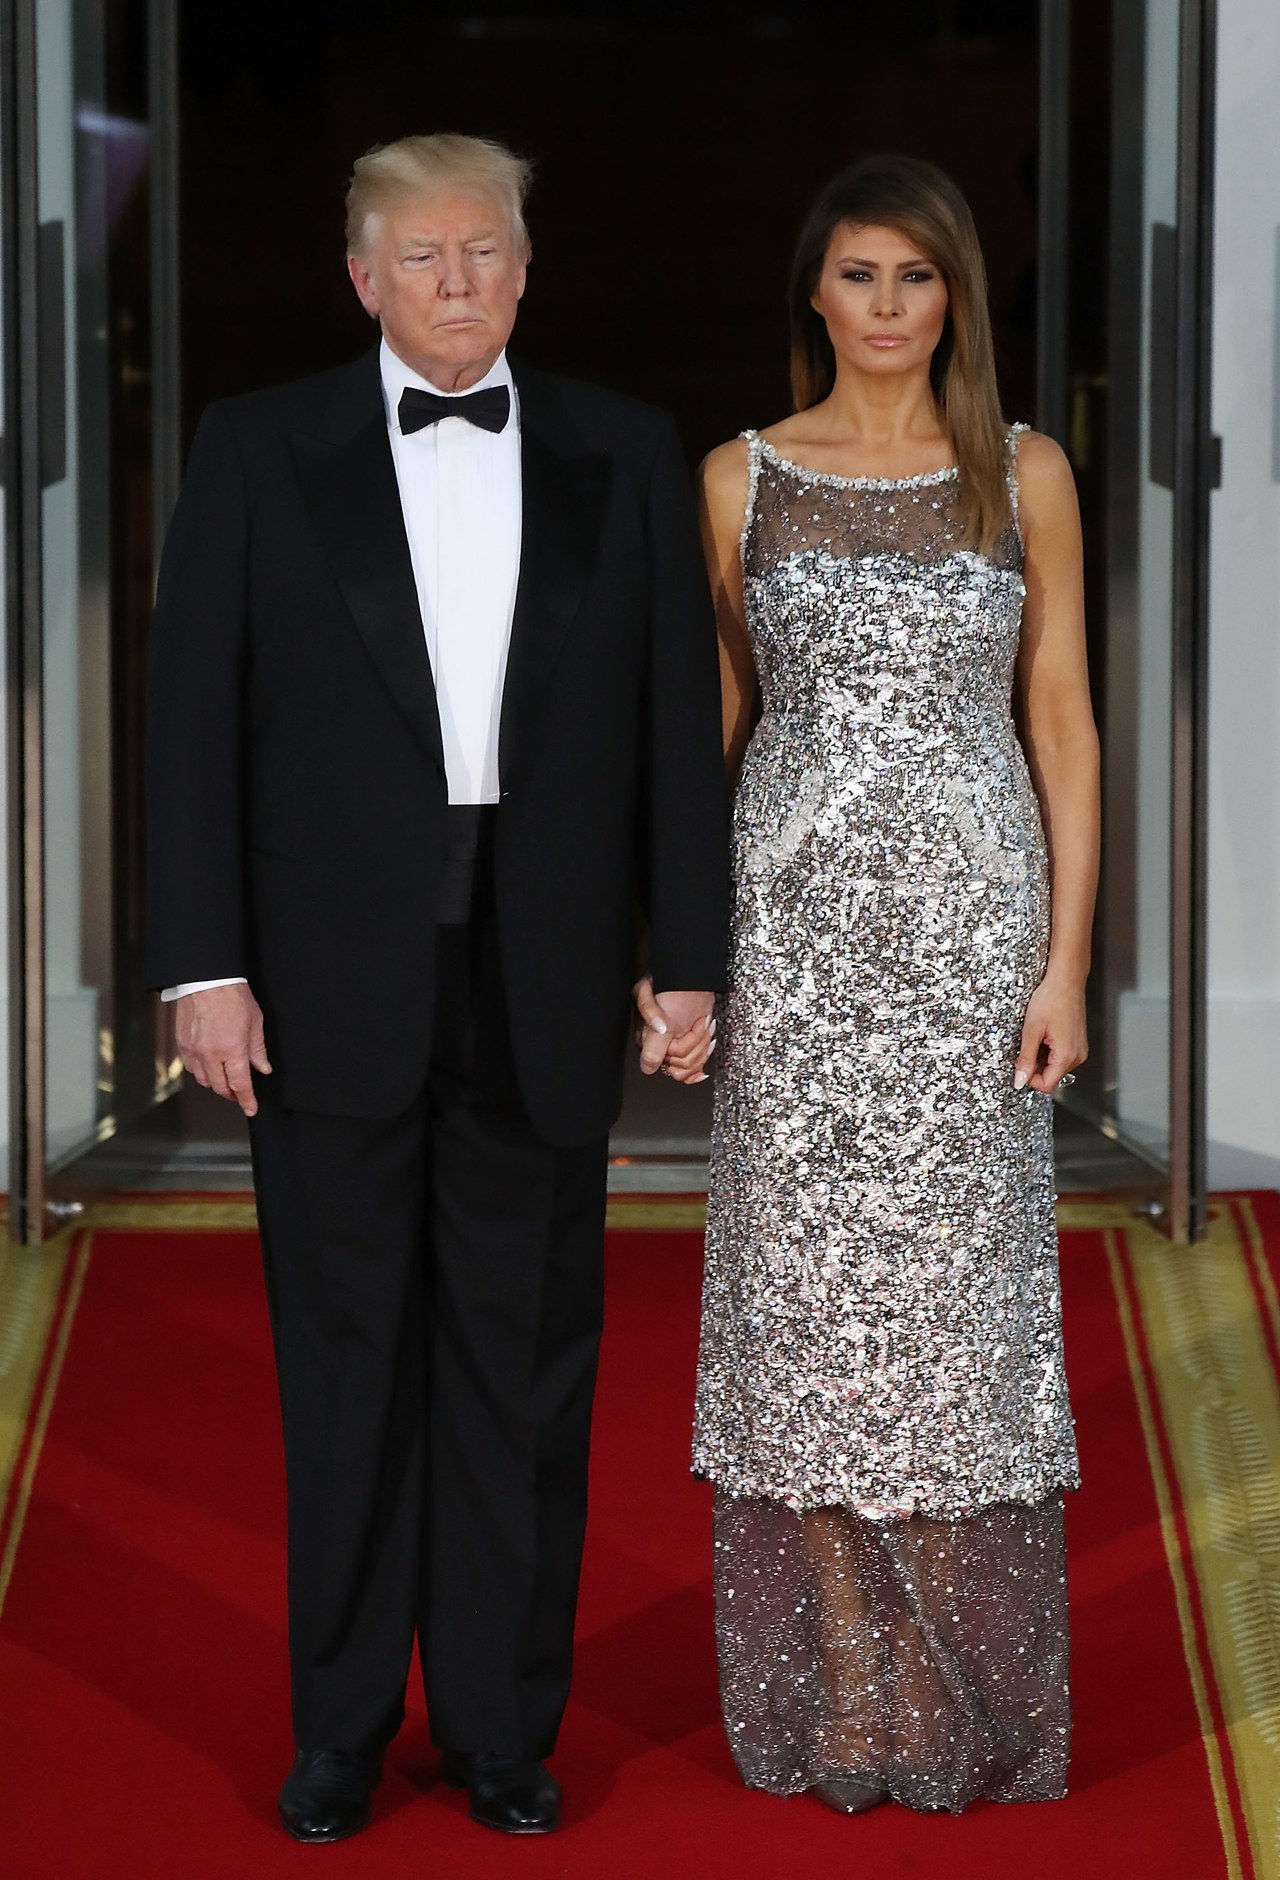 主席 Trump And First Lady Hosts State Dinner For French President Macron And Mrs. Macron